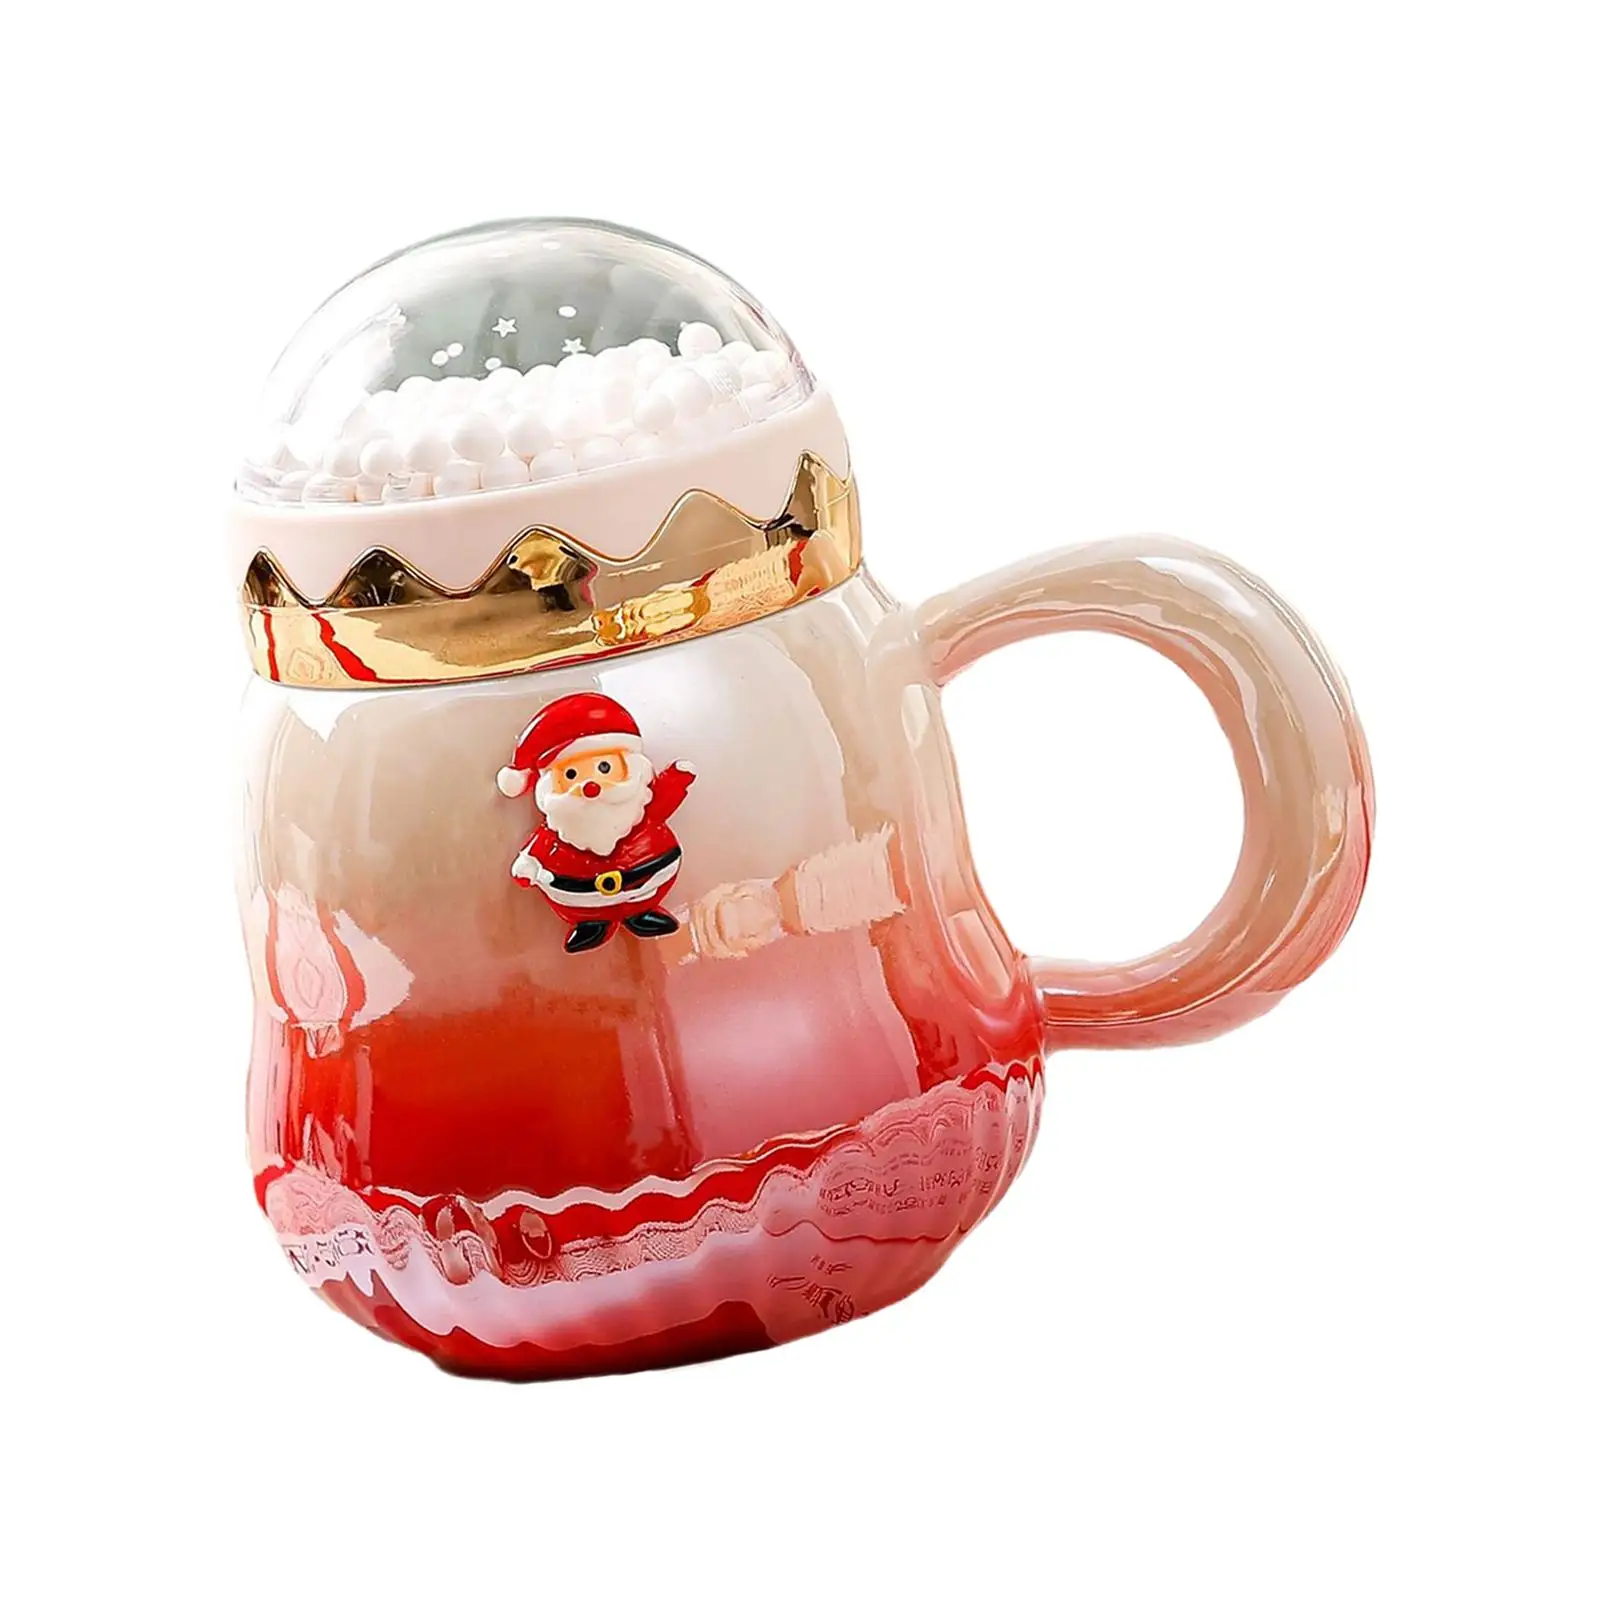 Christmas Coffee Mug 500ml with Handle and Lid Espresso Latte Mug Festive Mug Milk Chocolate Juice Mug for Xmas Christmas Family